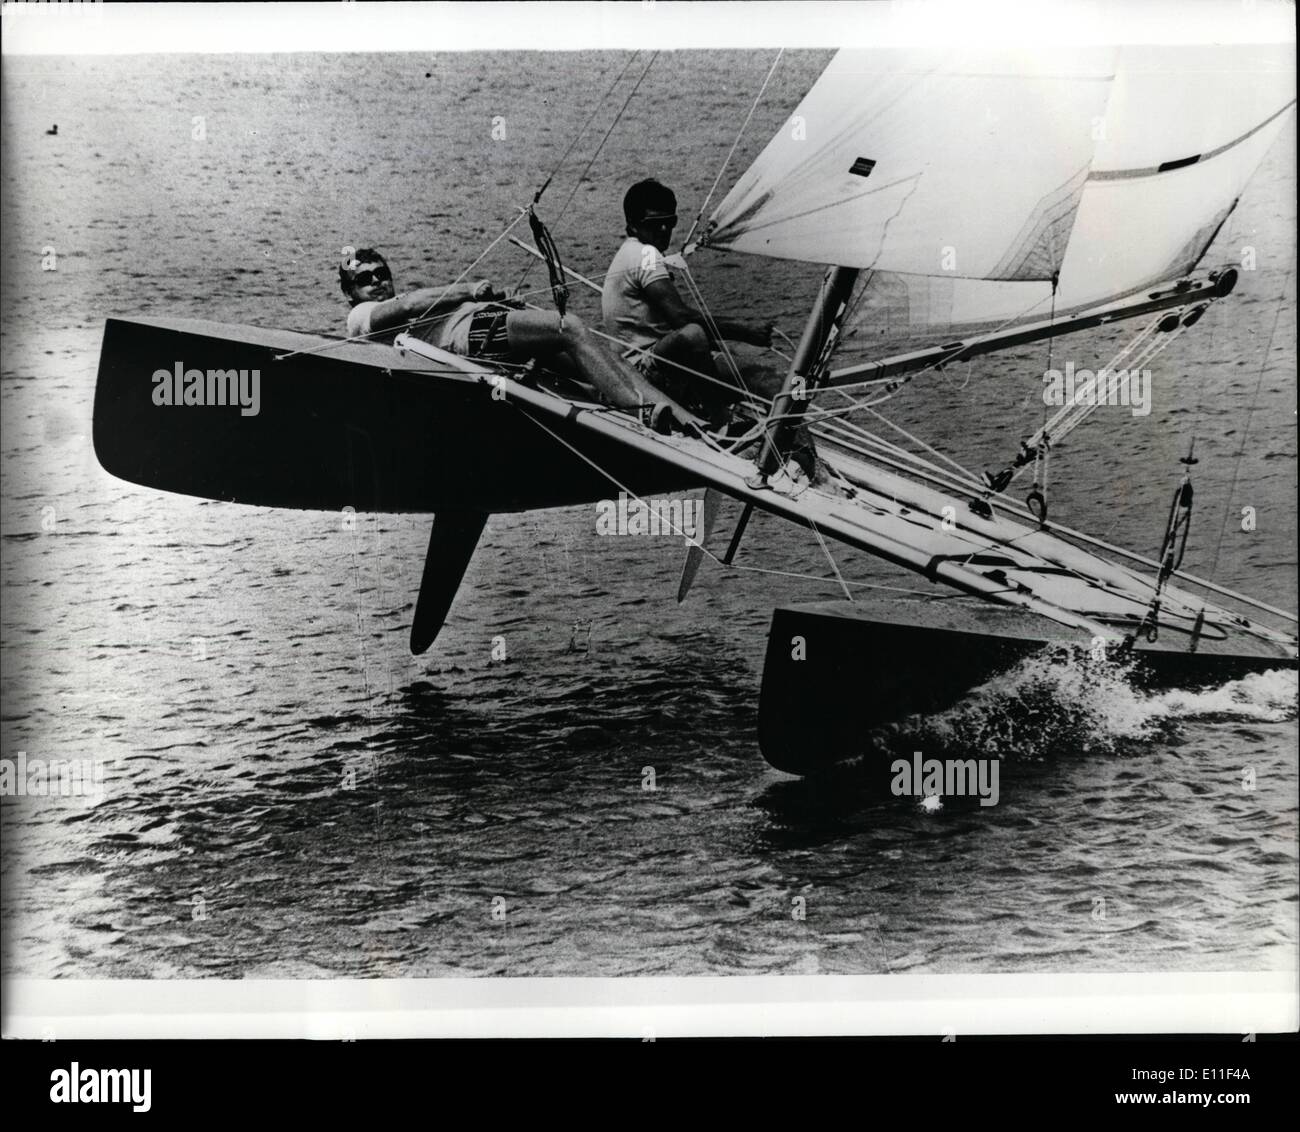 Lug. 07, 1977 - tenere stretto: un nuovo modello di una barca da regata è apparso sul lago Kielrz a Poznan, in Polonia. ''Torndao'' racer Foto Stock